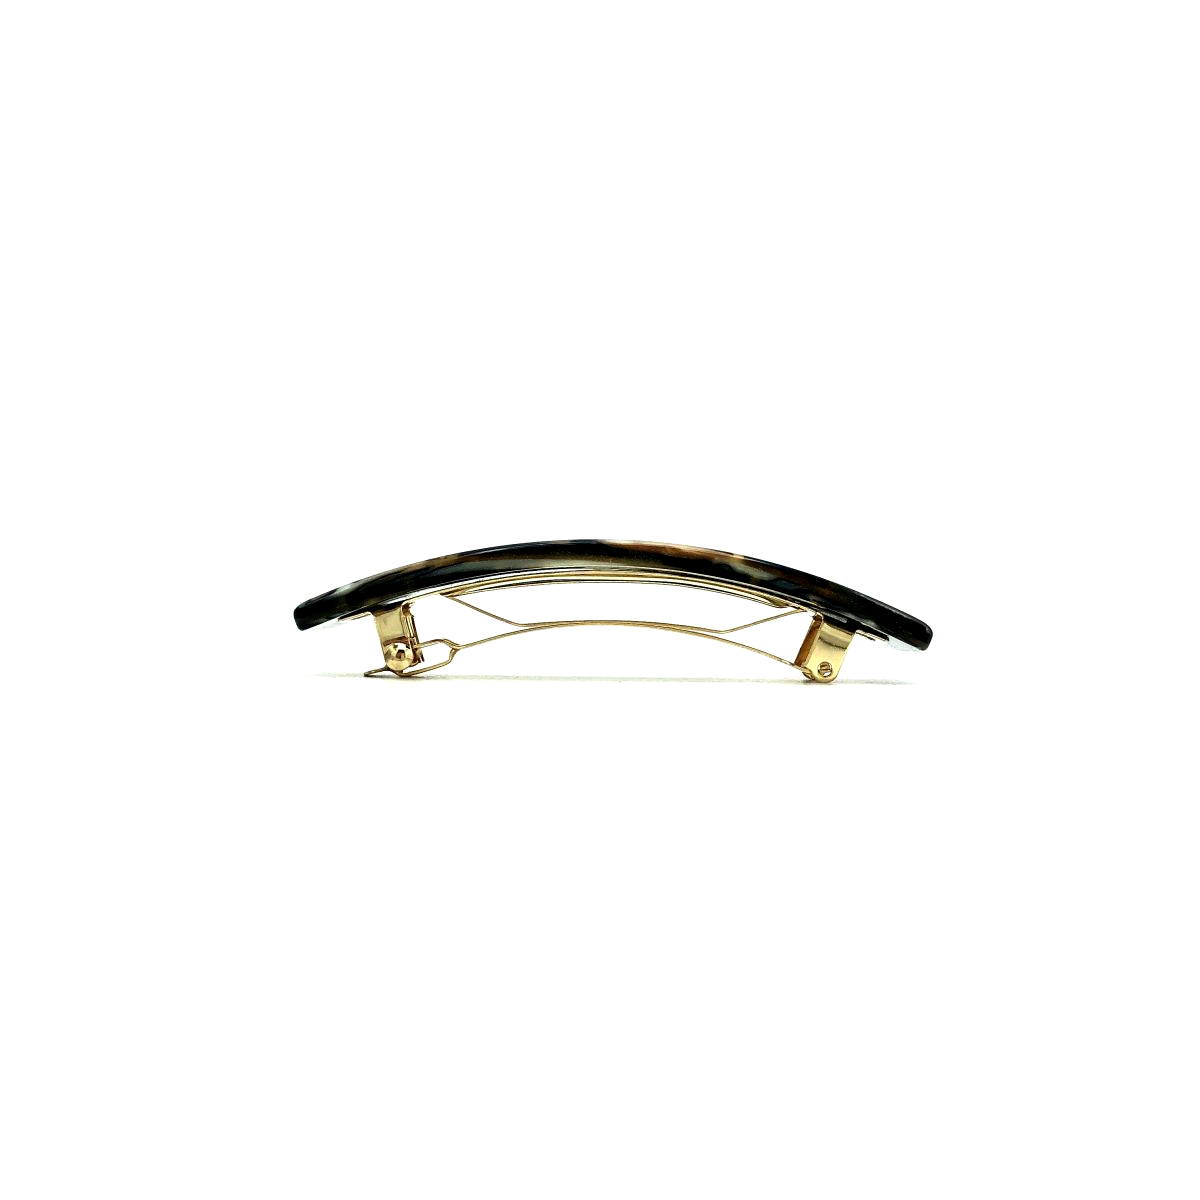 Haarspange gold/schwarz - mittel, rechteckig - 9 cm